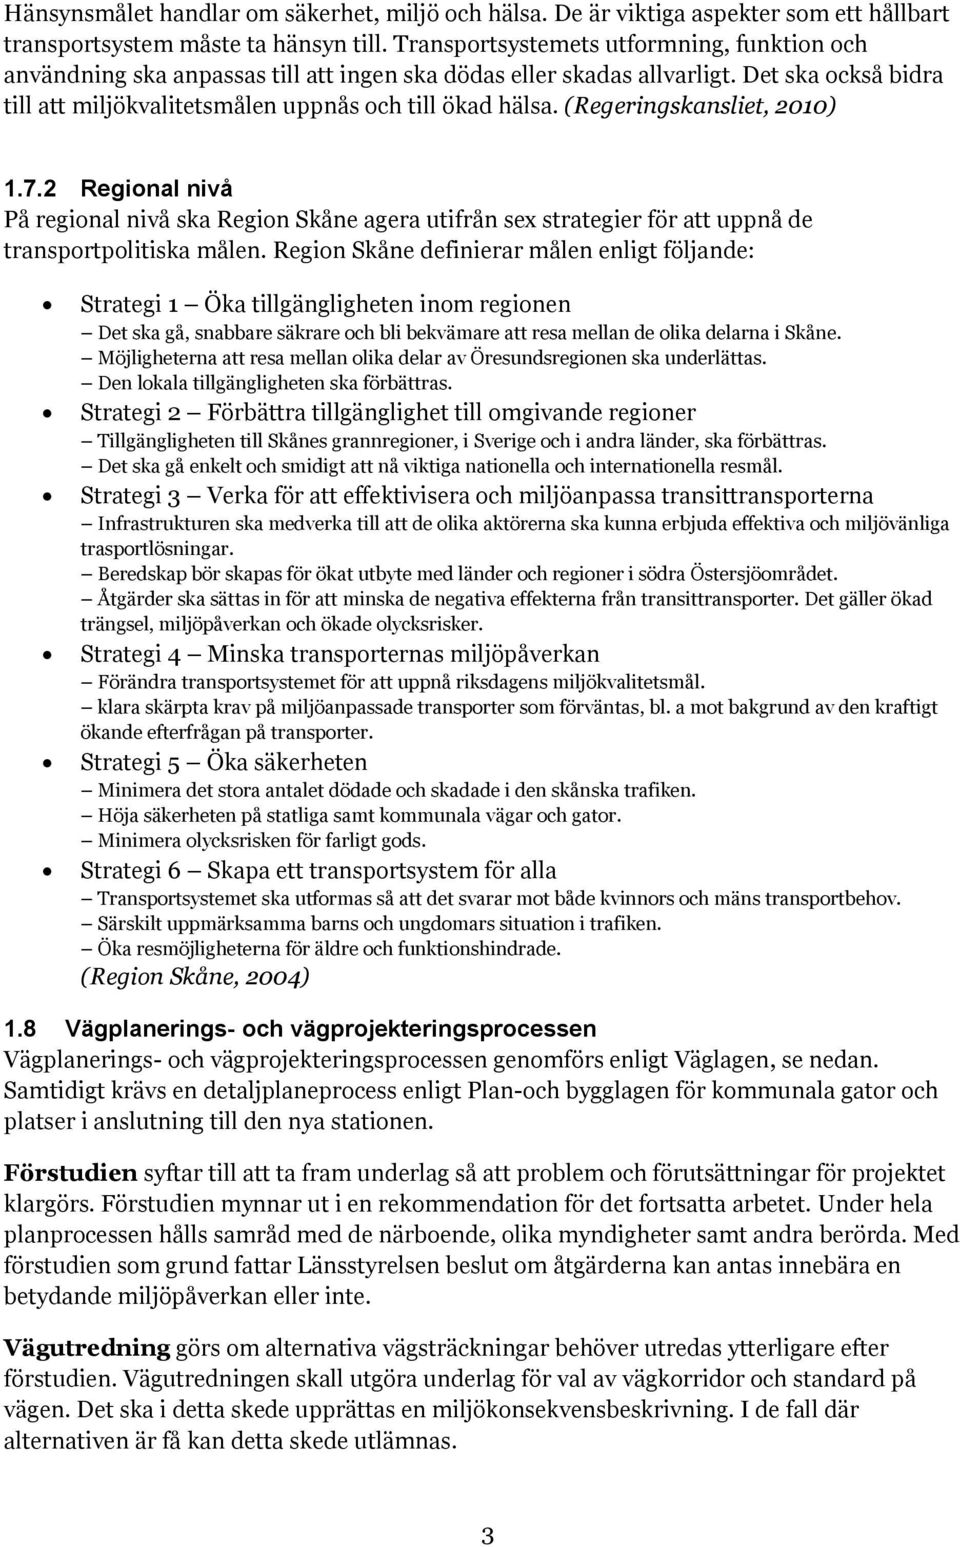 (Regeringskansliet, 2010) 1.7.2 Regional nivå På regional nivå ska Region Skåne agera utifrån sex strategier för att uppnå de transportpolitiska målen.